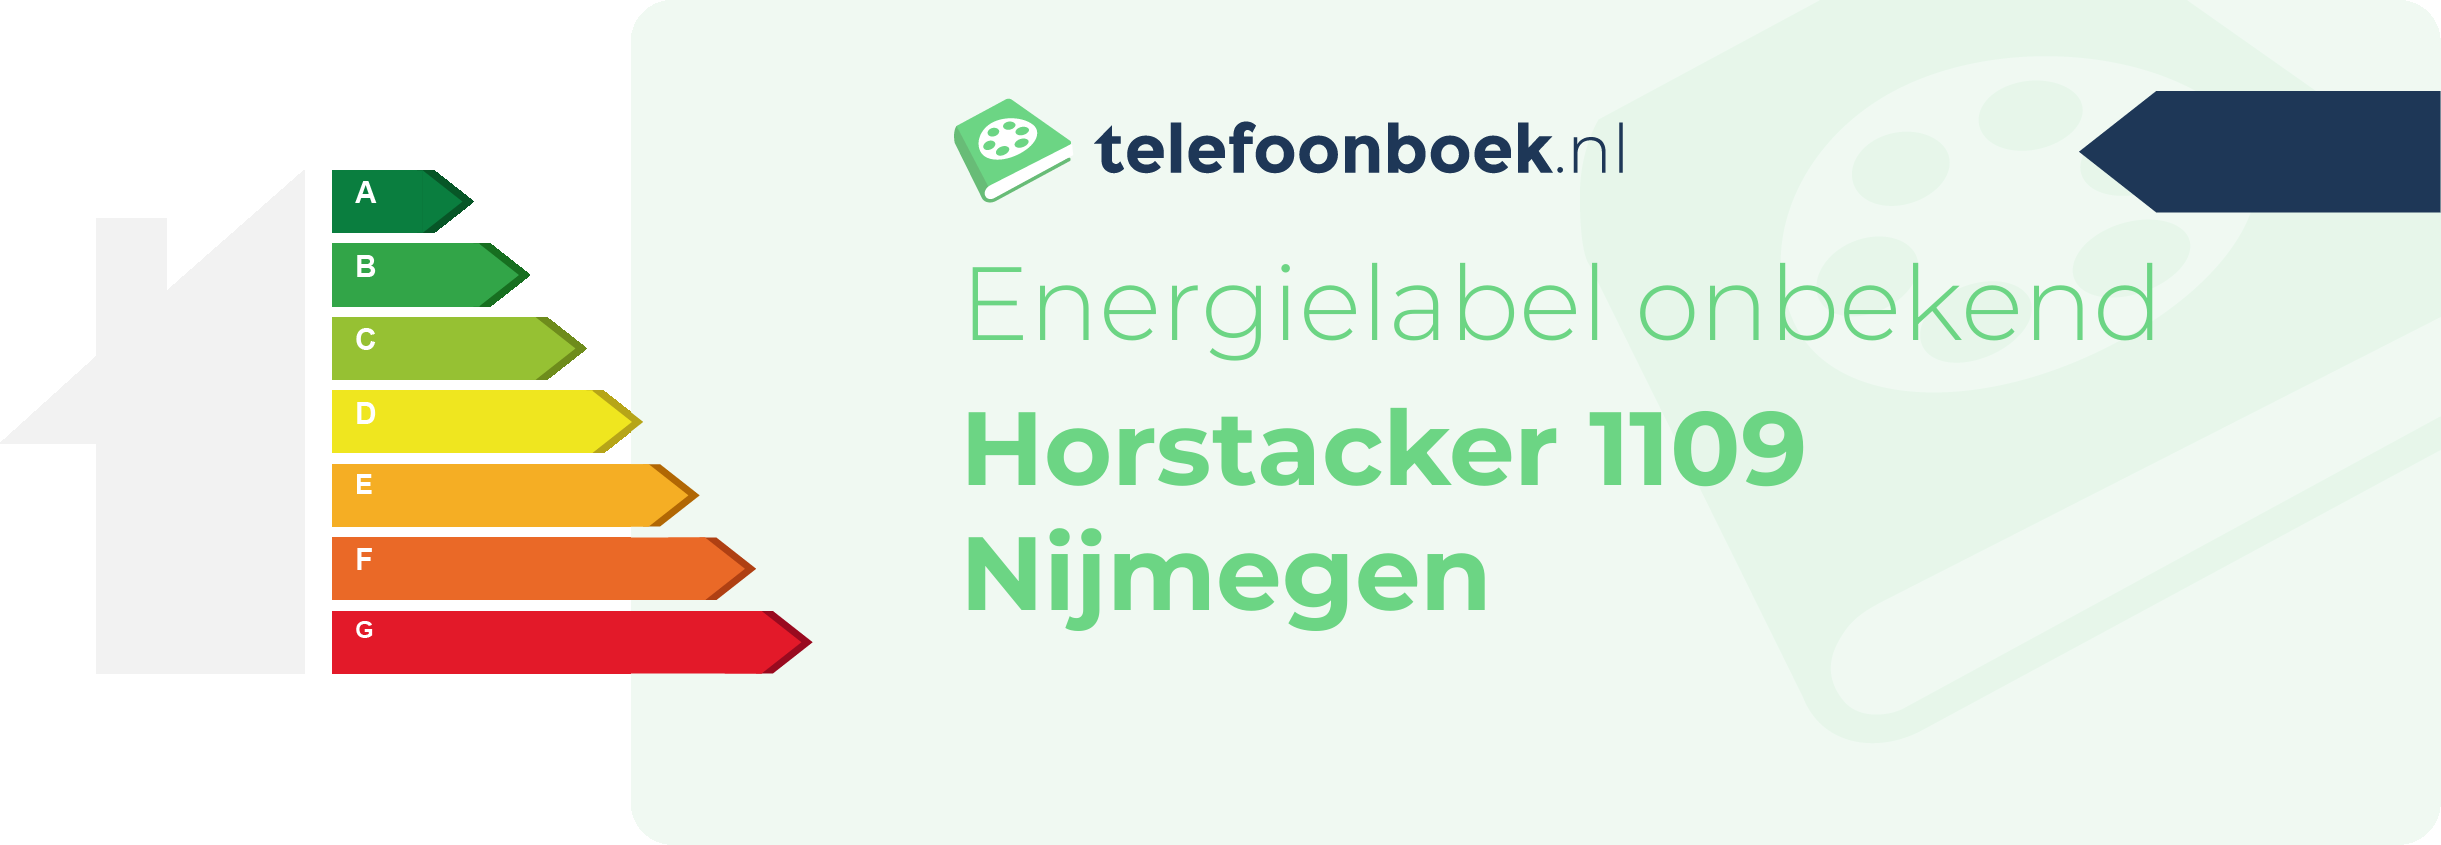 Energielabel Horstacker 1109 Nijmegen